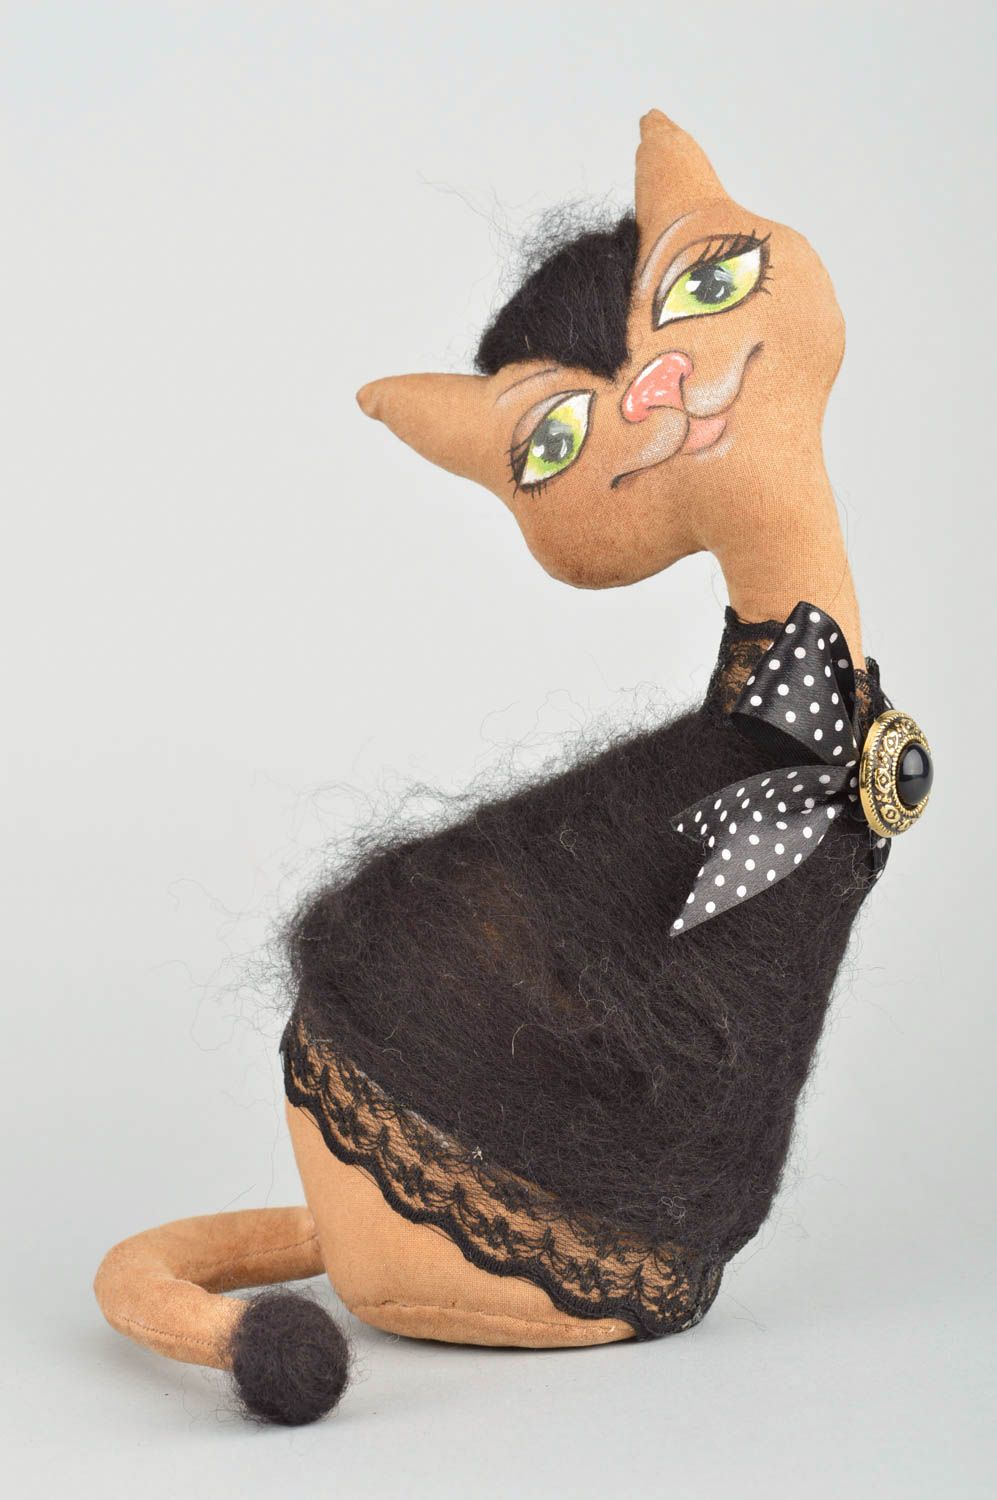 Textil Kuscheltier Katze mit Aroma handmade Schmuck für Interieur künstlerisch foto 2